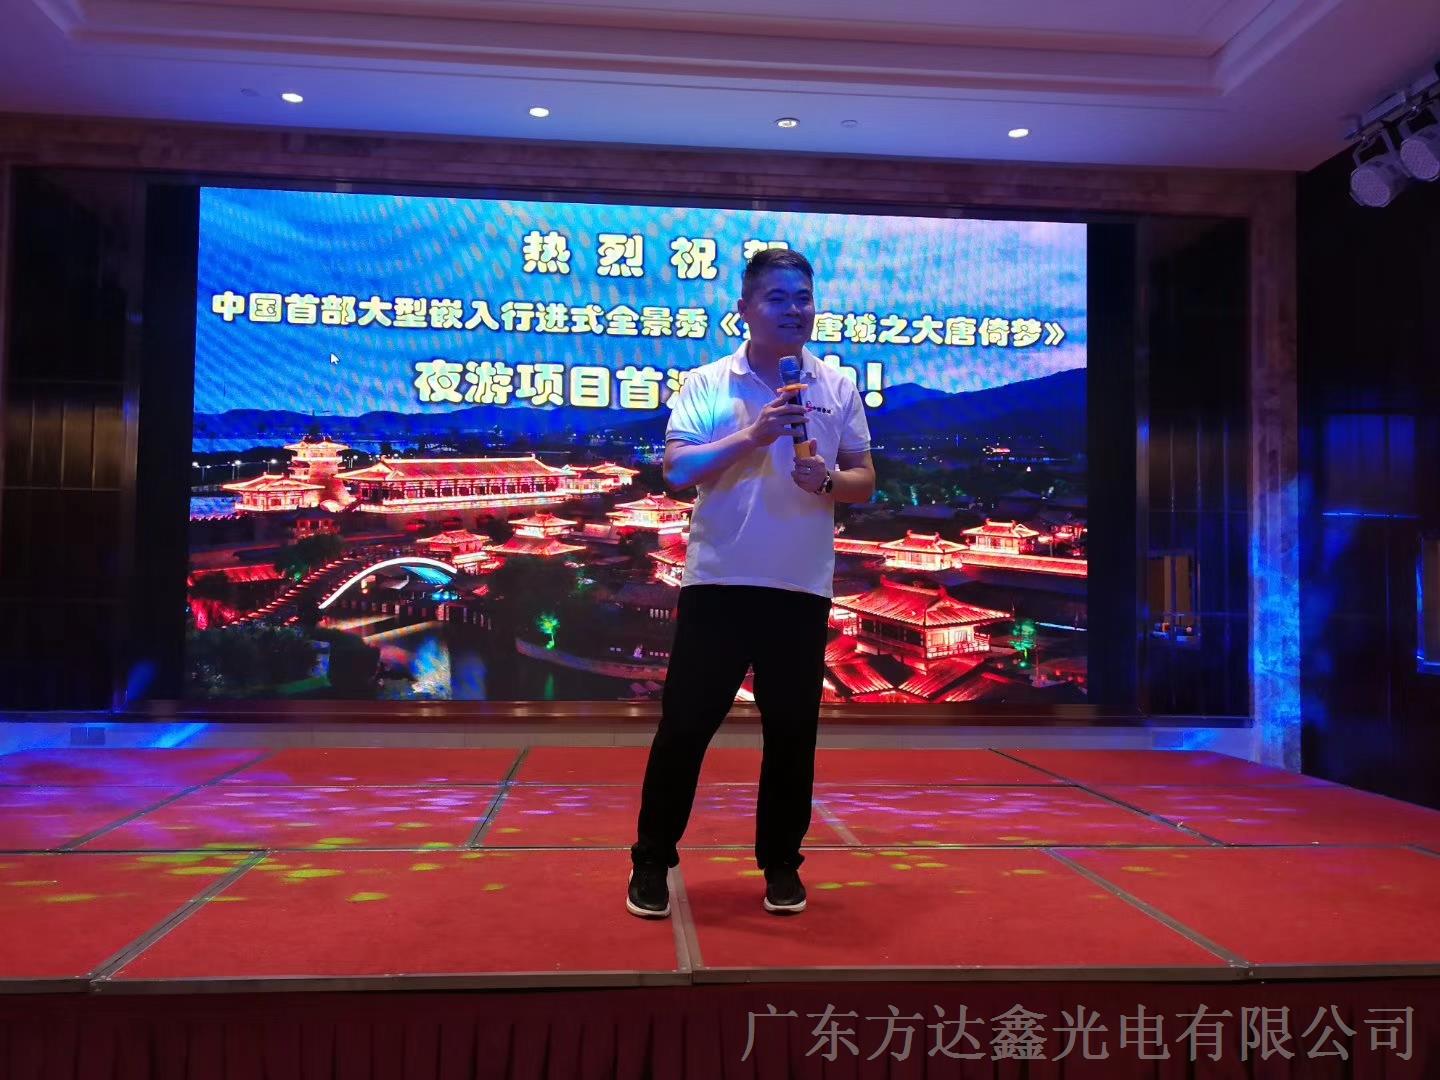 热烈祝贺中国首部大型嵌入行进式全景秀《盛世唐城之大唐倚梦》夜游项目首演成功！